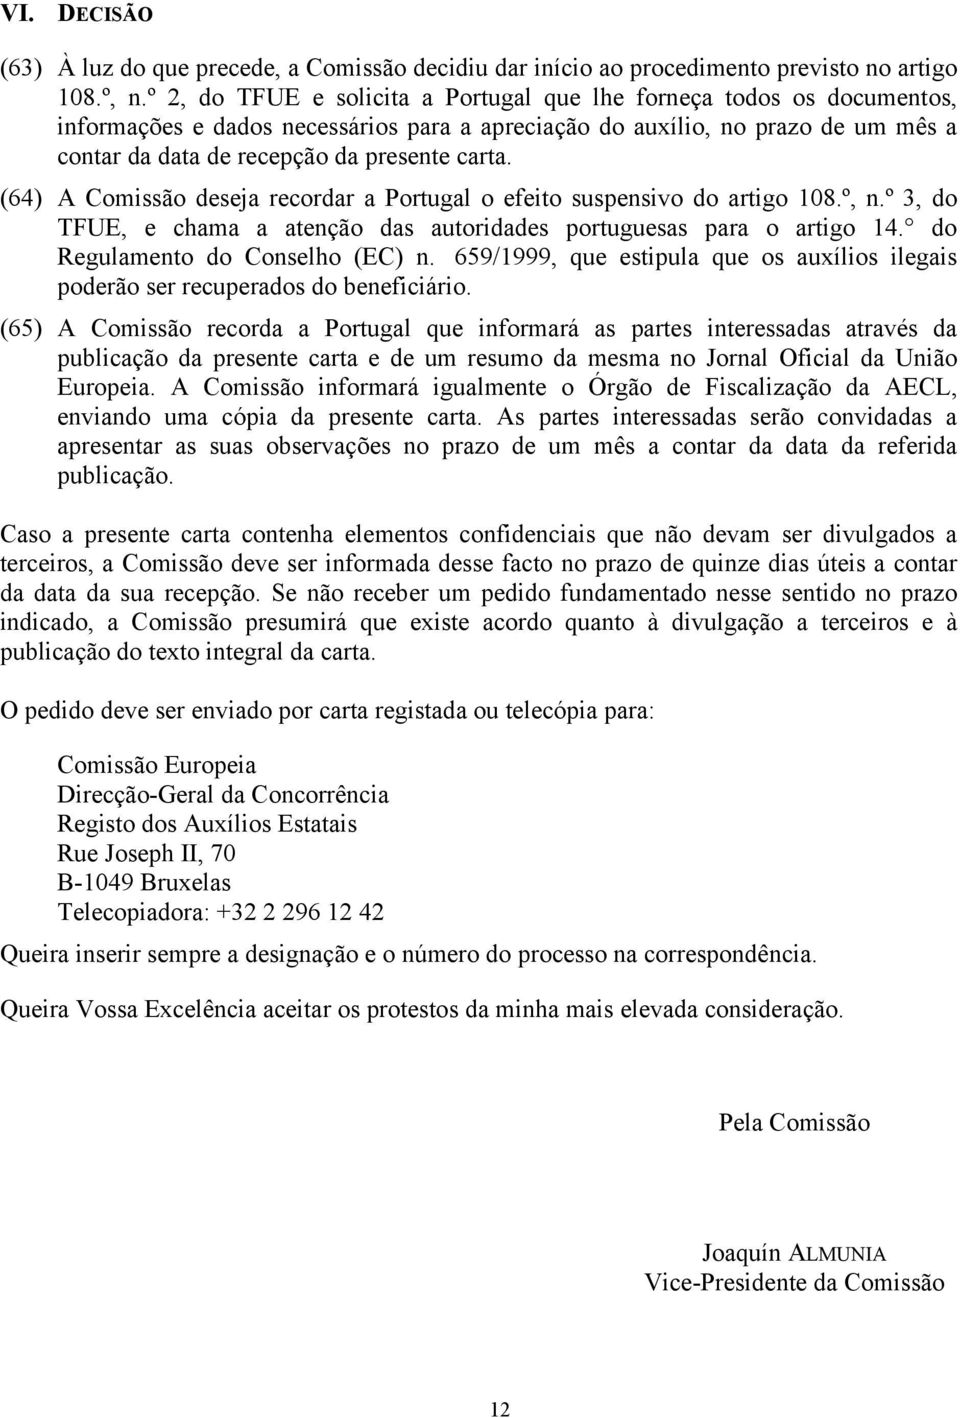 (64) A Comissão deseja recordar a Portugal o efeito suspensivo do artigo 108.º, n.º 3, do TFUE, e chama a atenção das autoridades portuguesas para o artigo 14. do Regulamento do Conselho (EC) n.